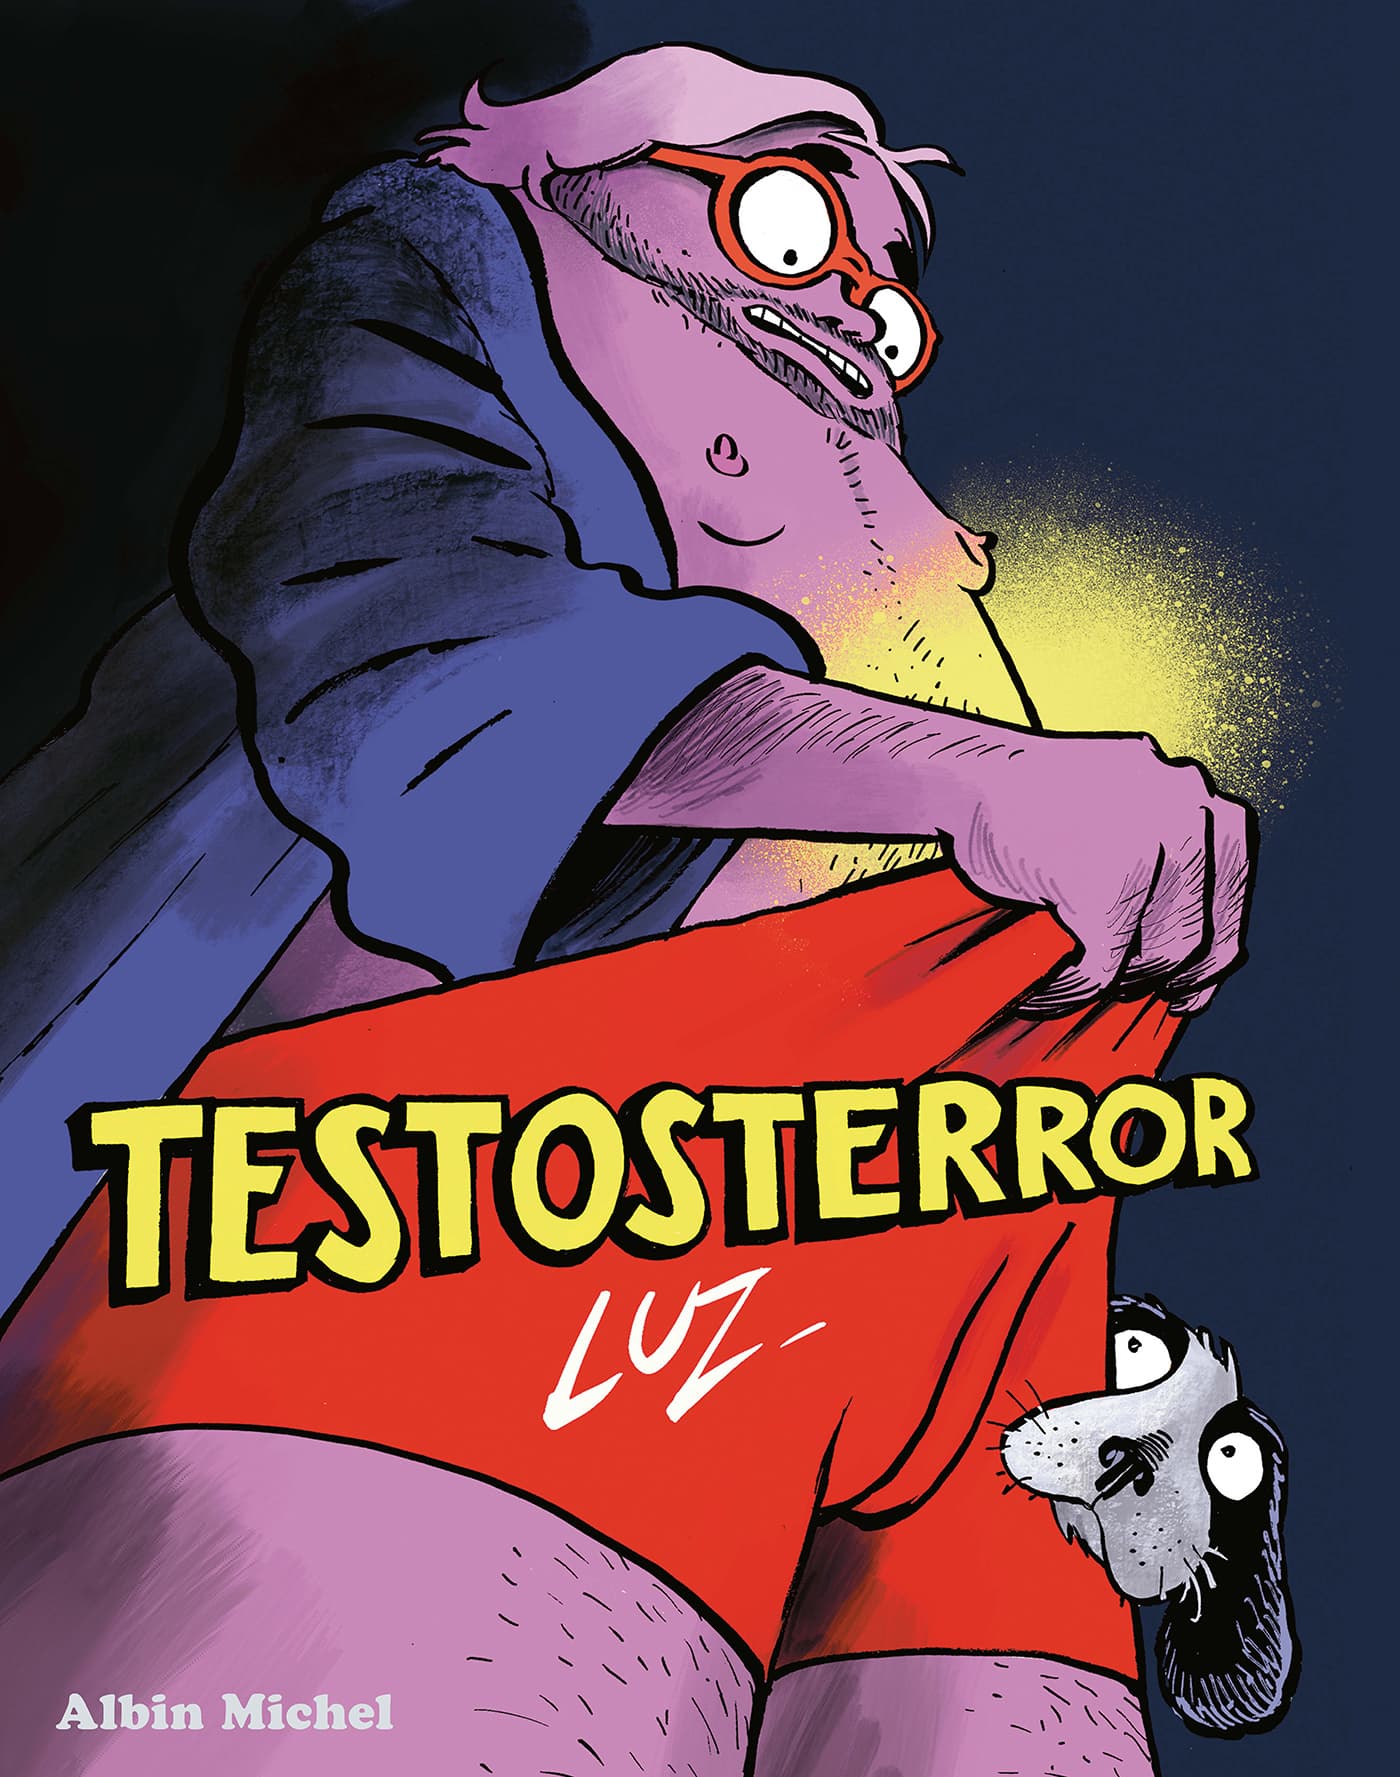 Testosterror, la nouvelle BD satirique de Luz qui se moque des  masculinistes